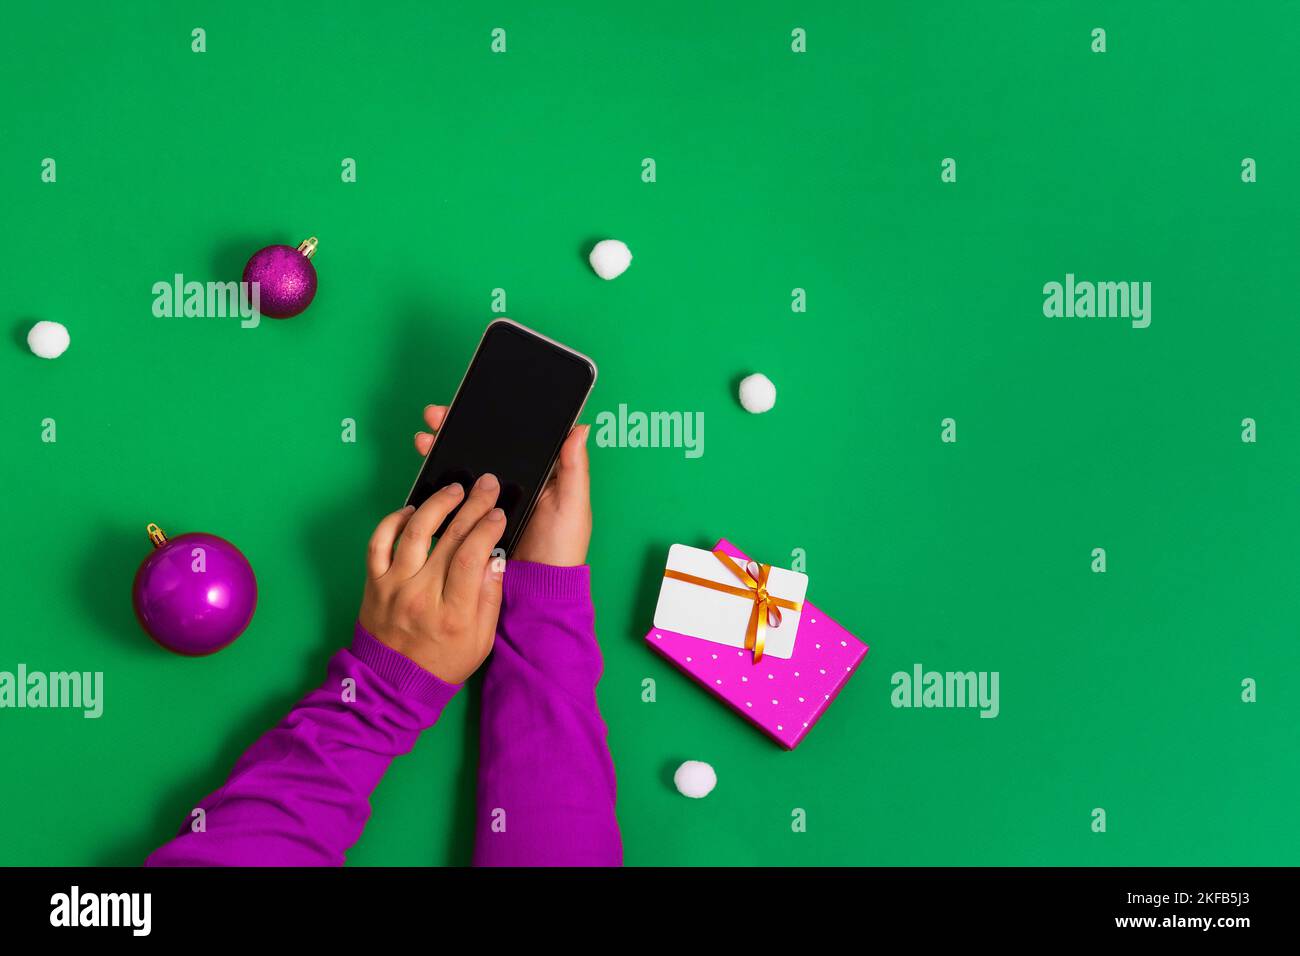 Mains dans un chandail violet touche l'écran du smartphone avec les doigts, paiement en ligne pour les achats de Noël, fond vert, plat. Conflue lumineuse Banque D'Images